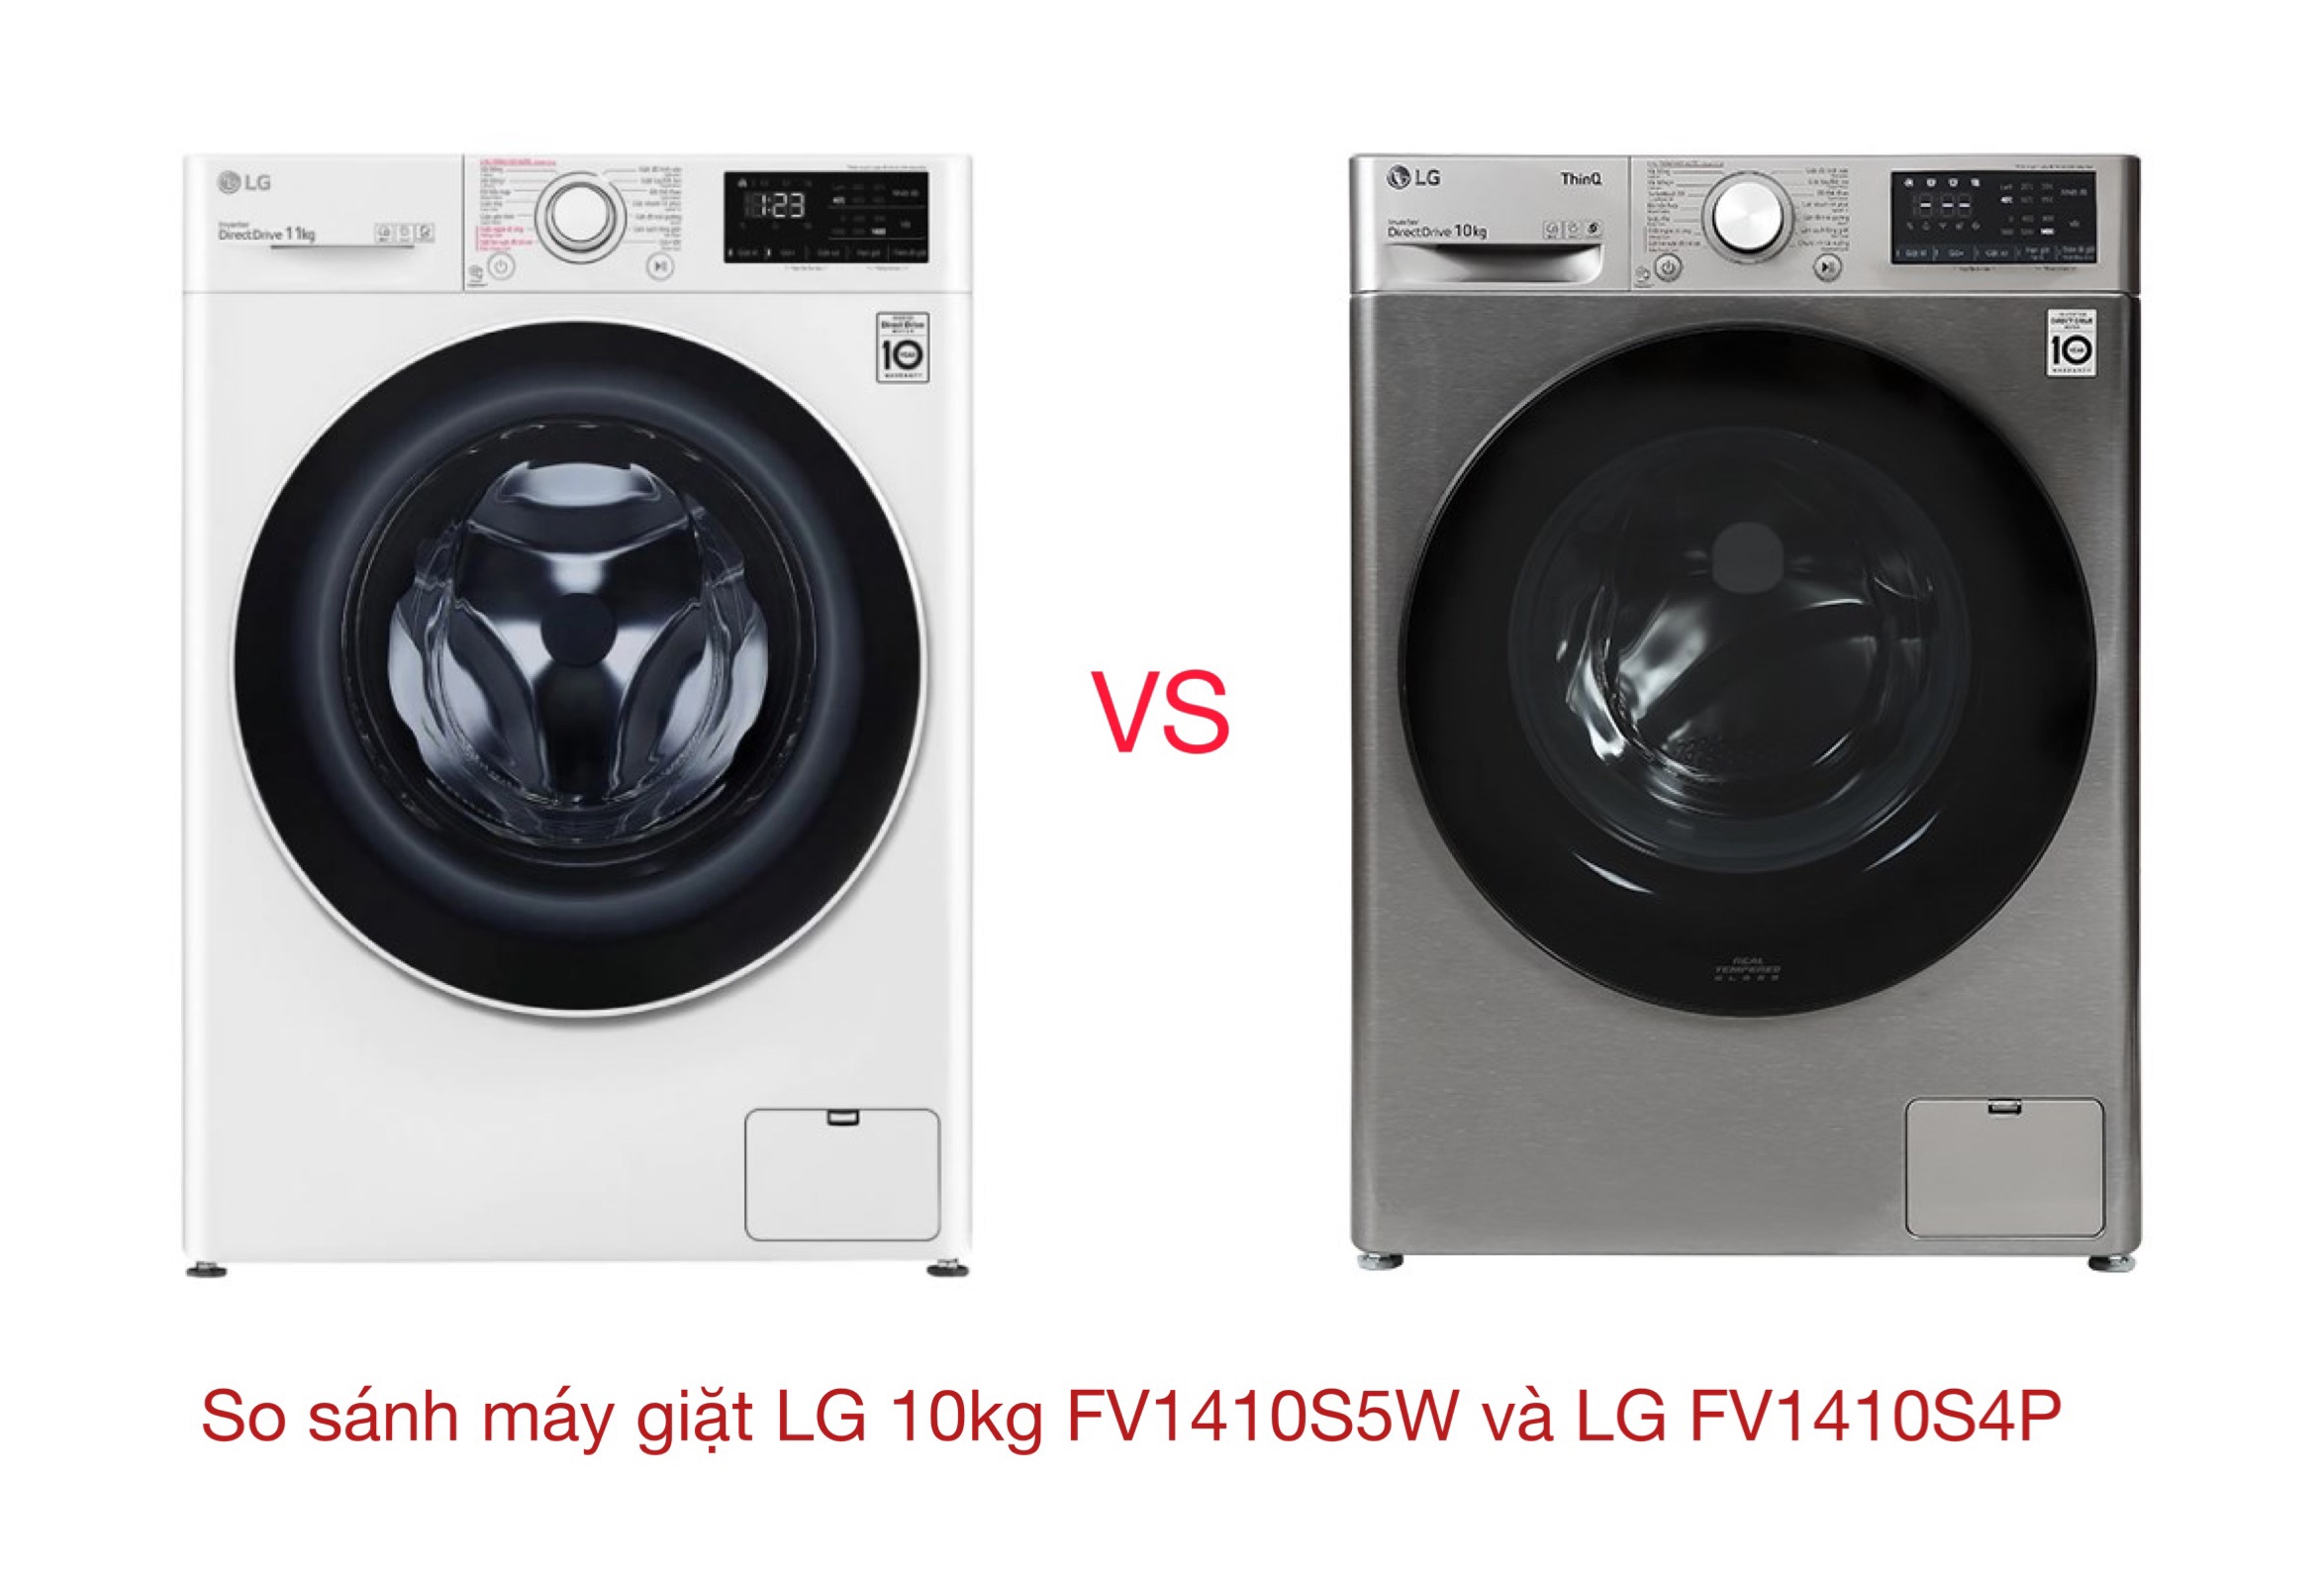 So sánh máy giặt LG FV1410S5W và LG FV1410S4P